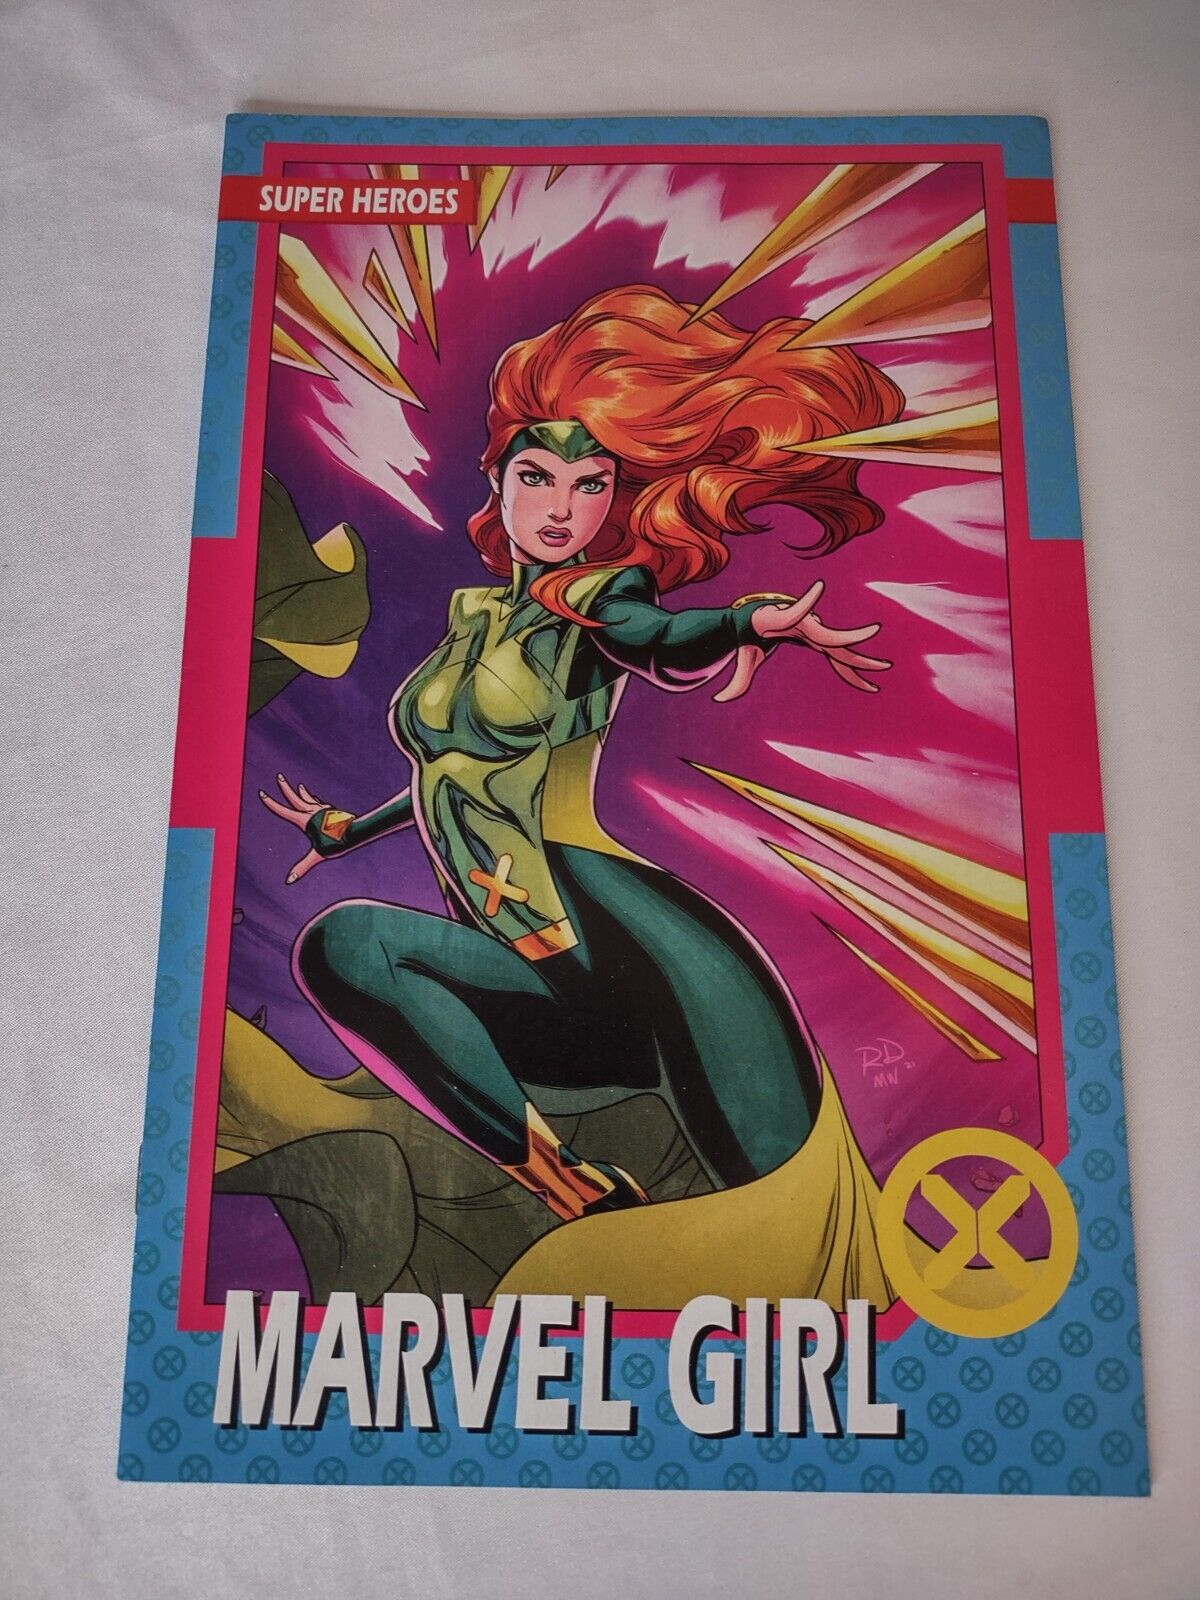  X-MEN #3C Marvel Girl, Trading Card Variant 2021 MARVEL Comics VF/NM Book